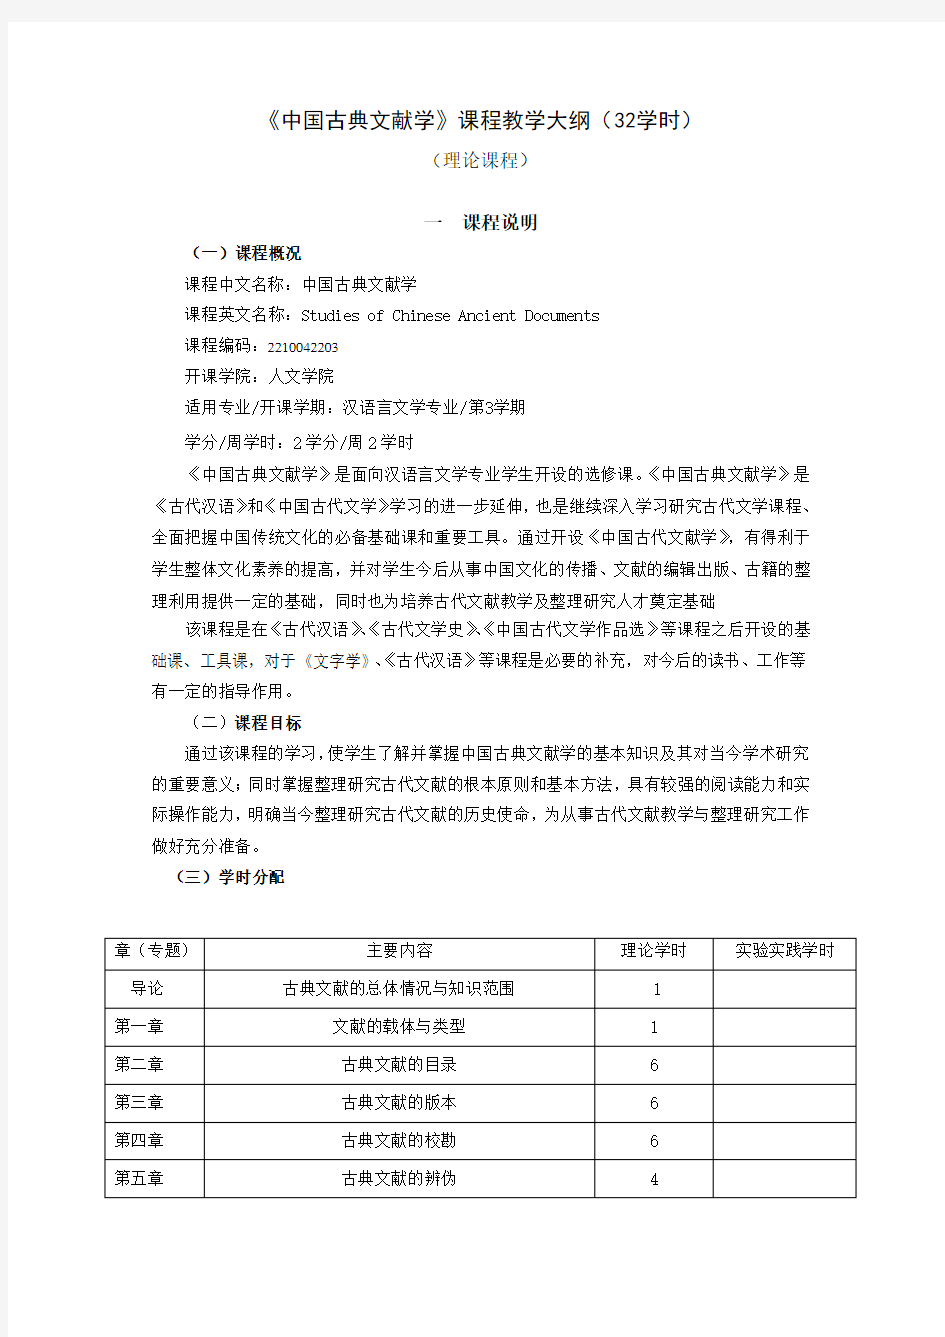 2014版《中国古典文献学》教学大纲